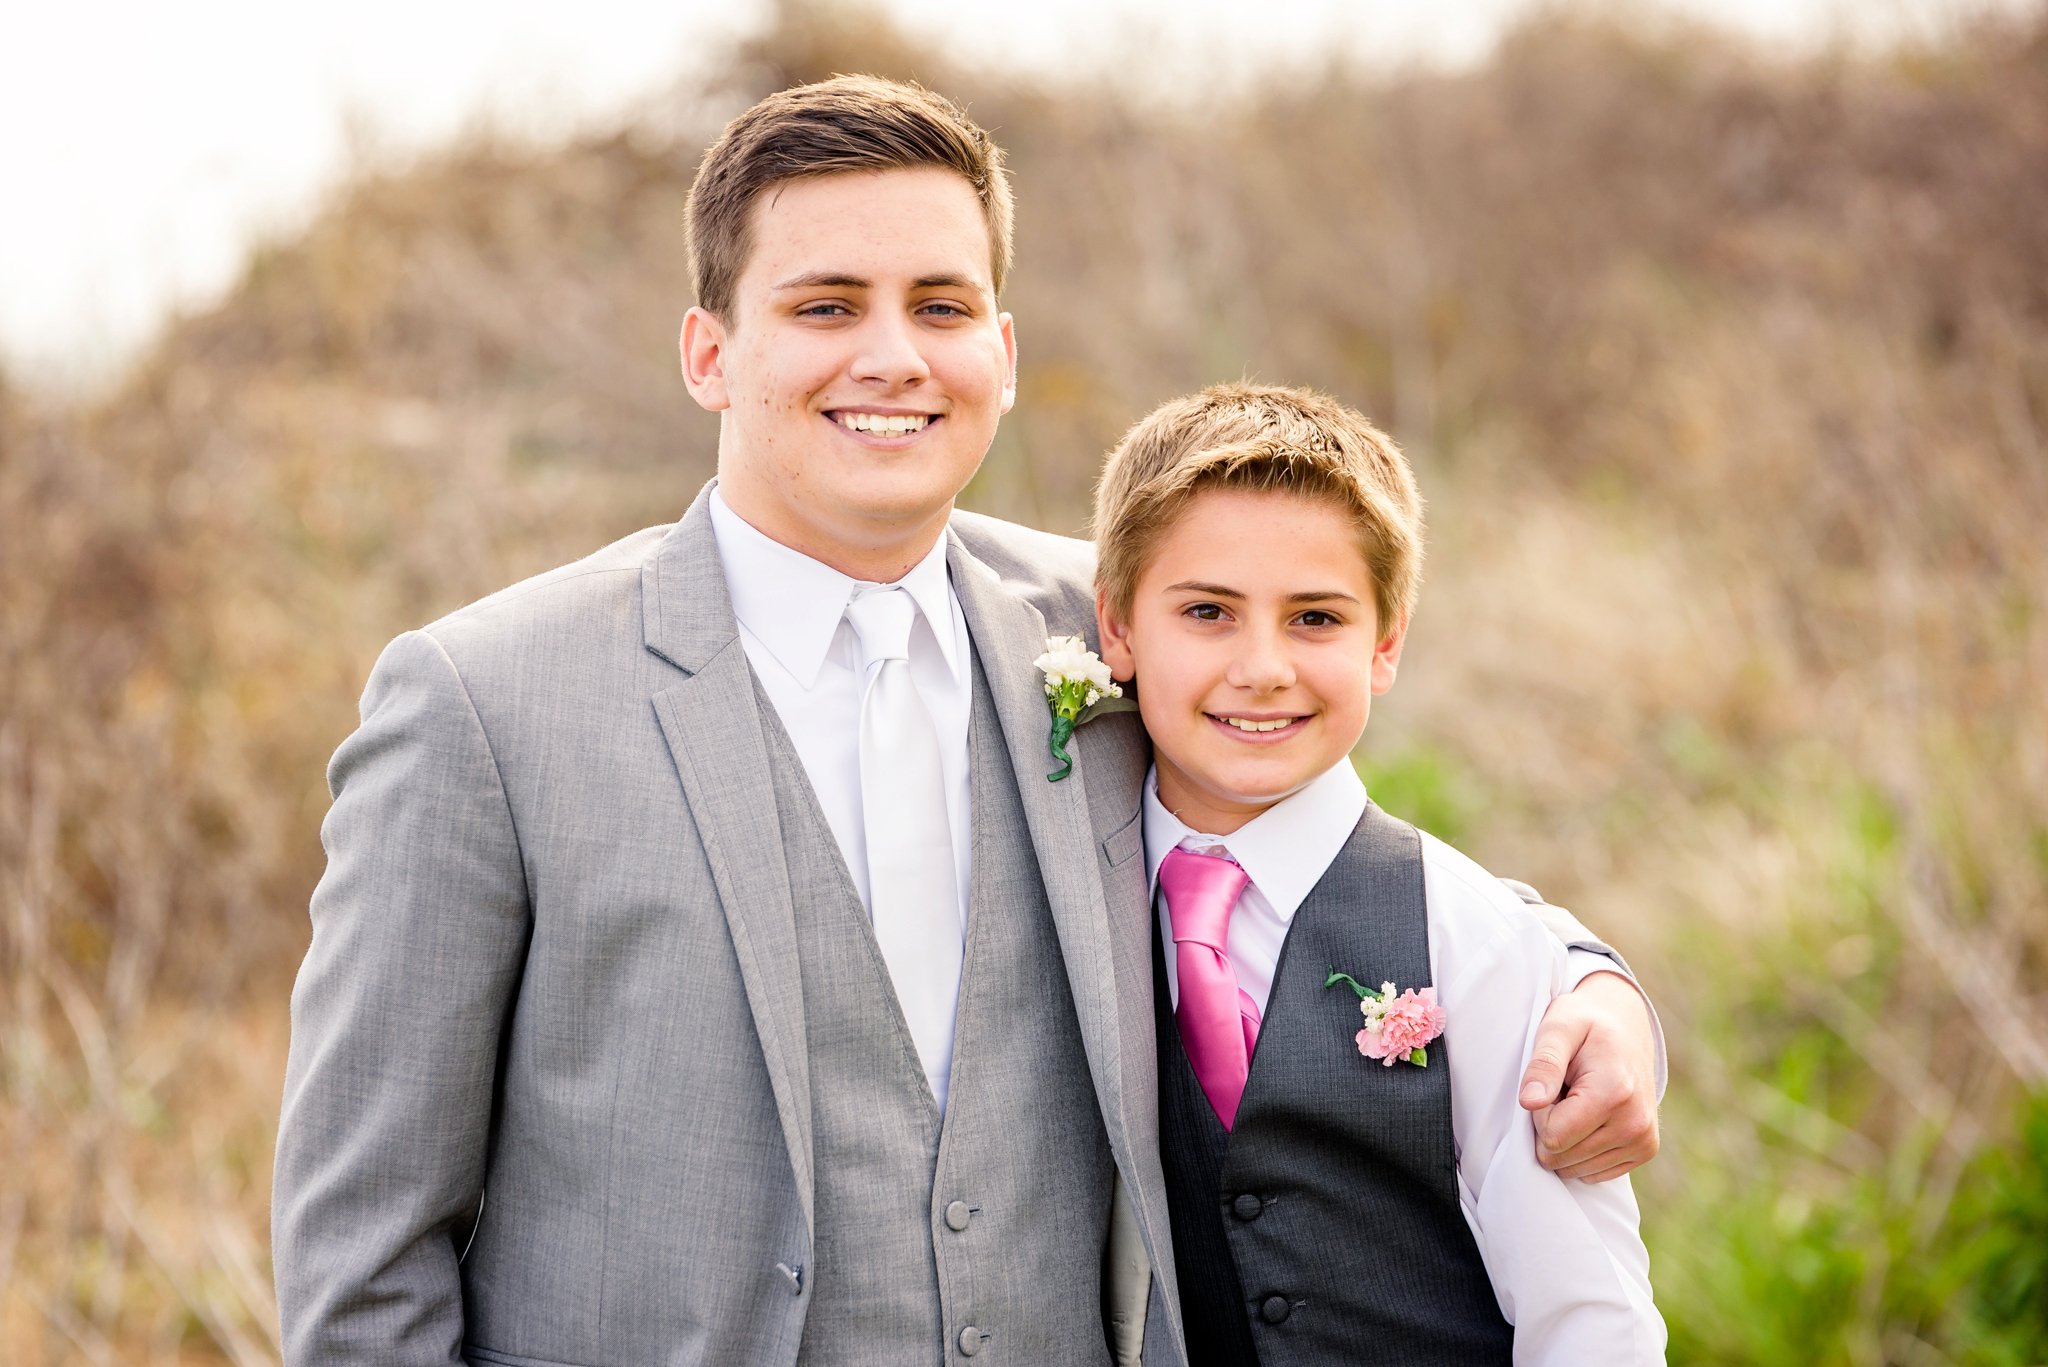  Peyton & Chris's Wedding 4/10/15 